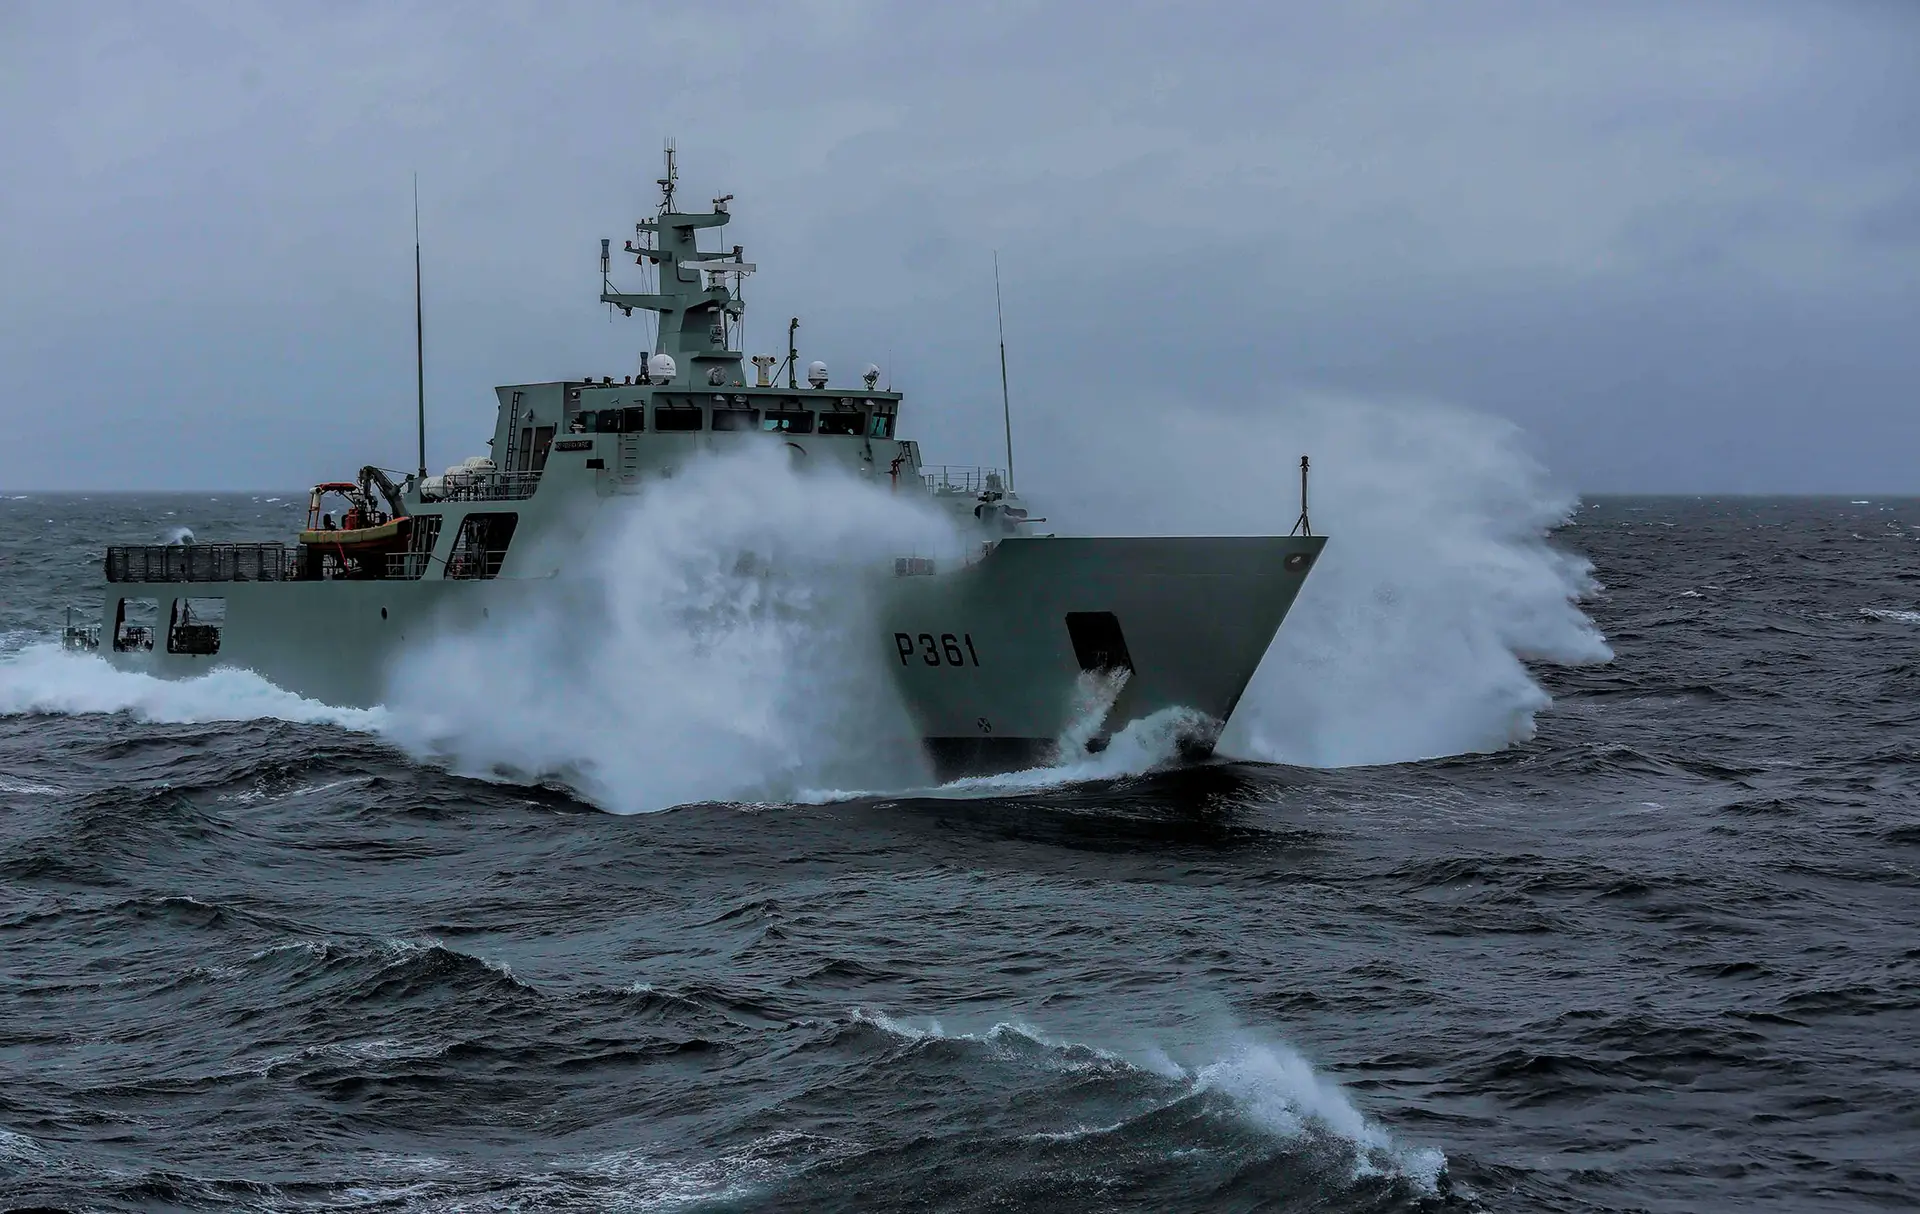 Patrulha Oceânico Figueira da Foz da Marinha portuguesa